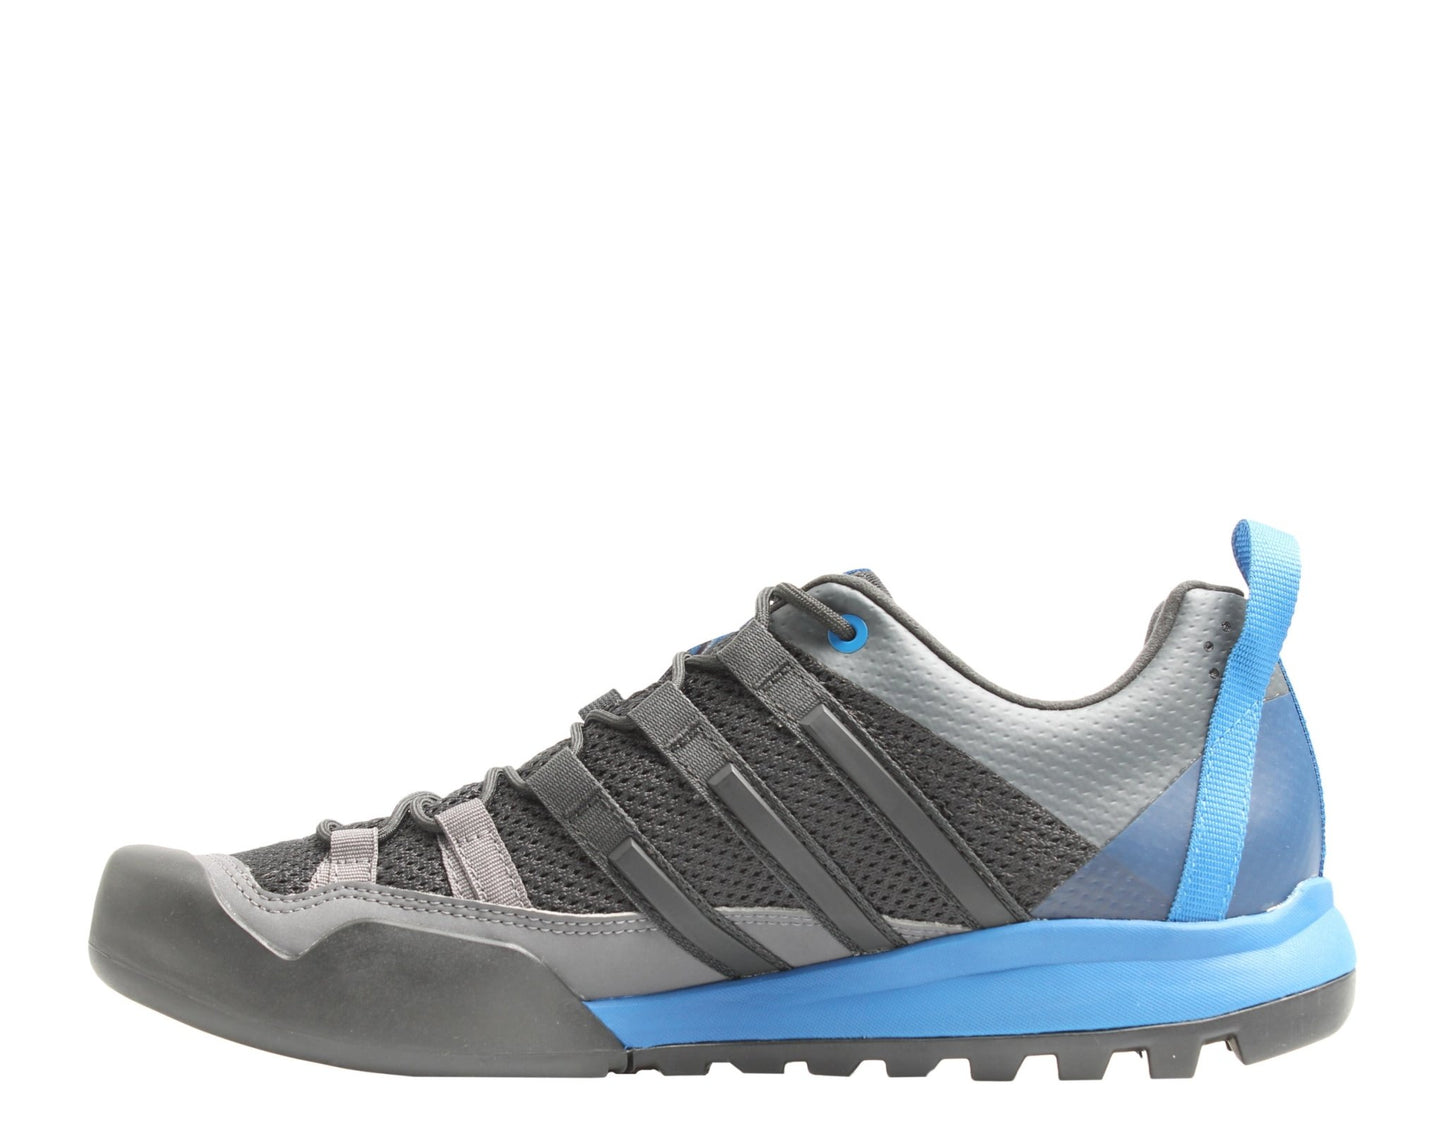 Adidas Terrex Solo Black/Black/Blue Beauty Men's Hiking Shoes CM7657 - Becauze